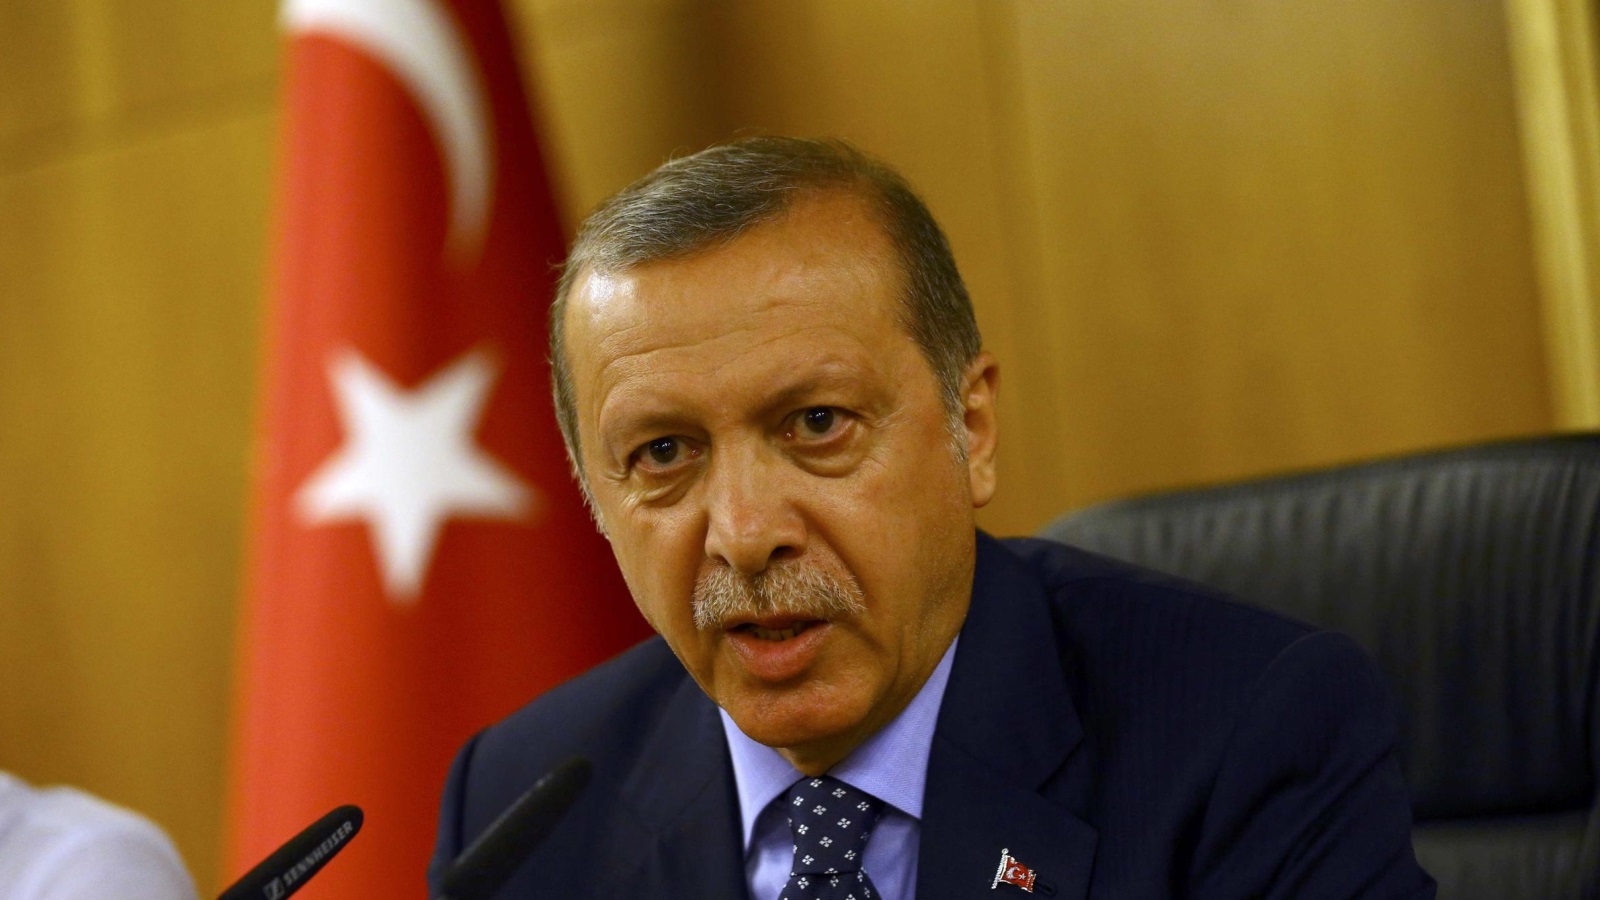  أردوغان قال إنه لم يصل تركيا سوى مبالغ رمزية من أوروبا في إطار اتفاقية اللاجئين (رويترز)